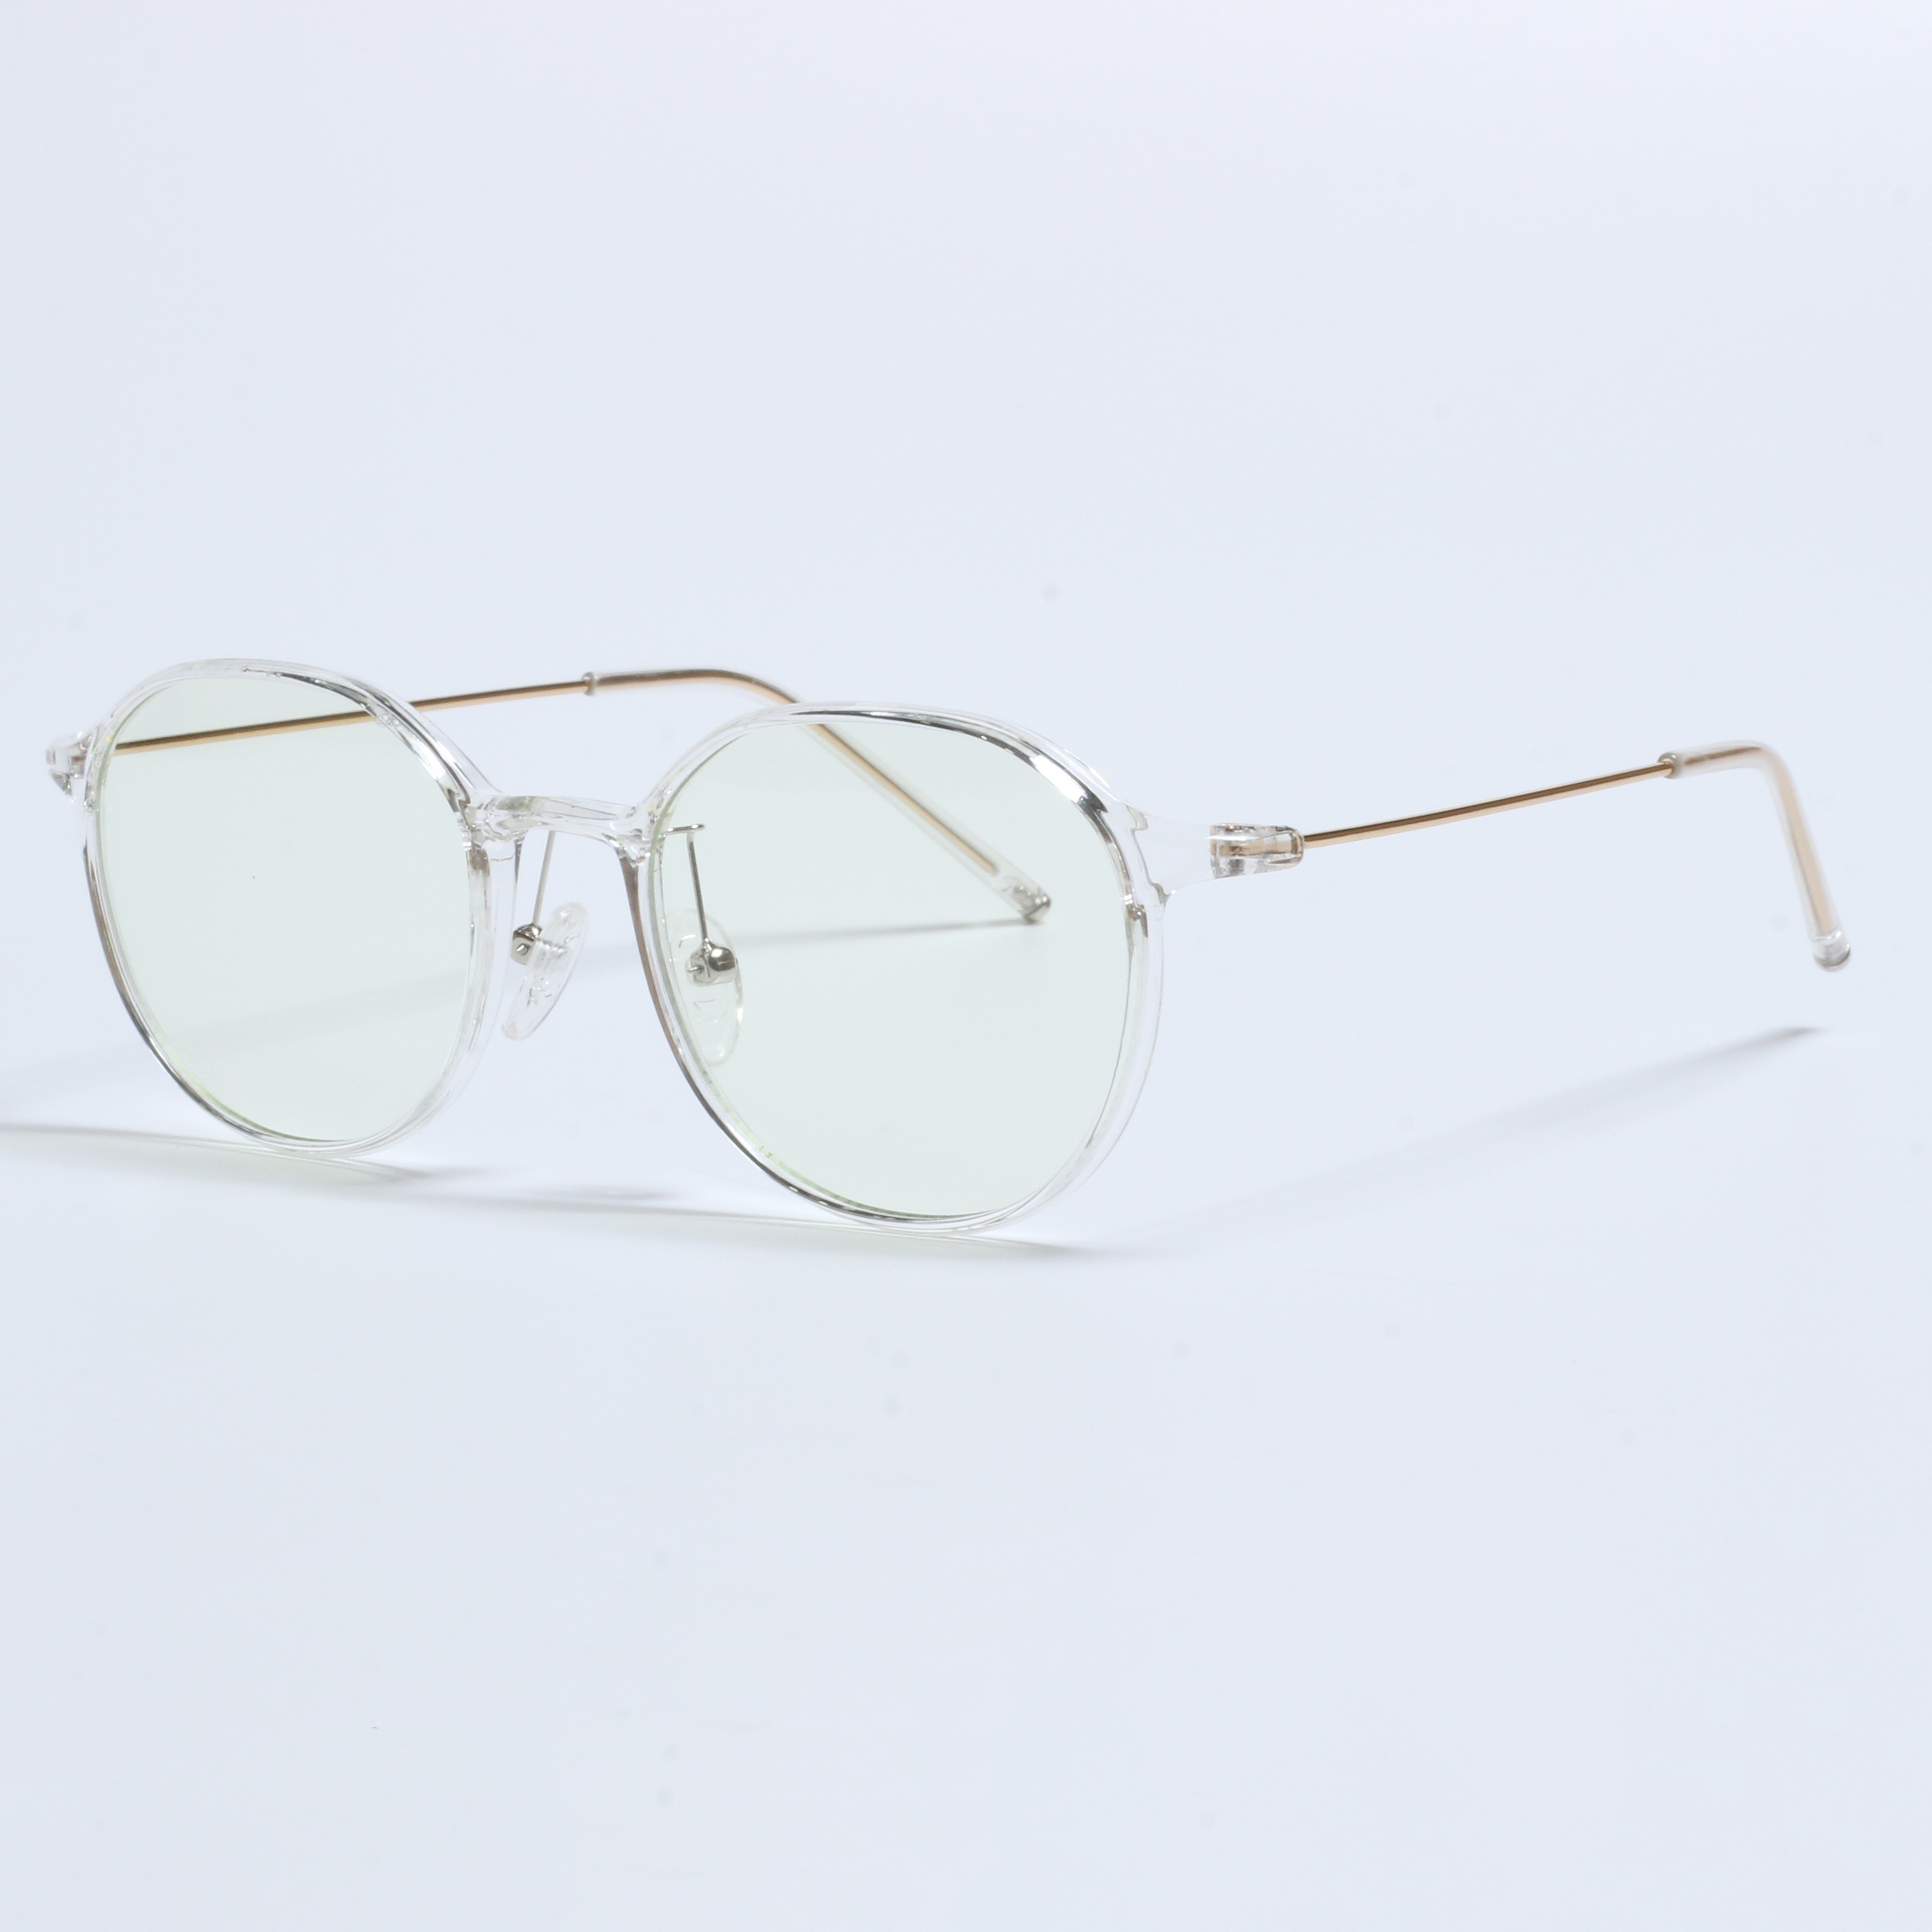 Vintage Thick Gafas Opticas De Hombres Transparent TR90 Frames (3)